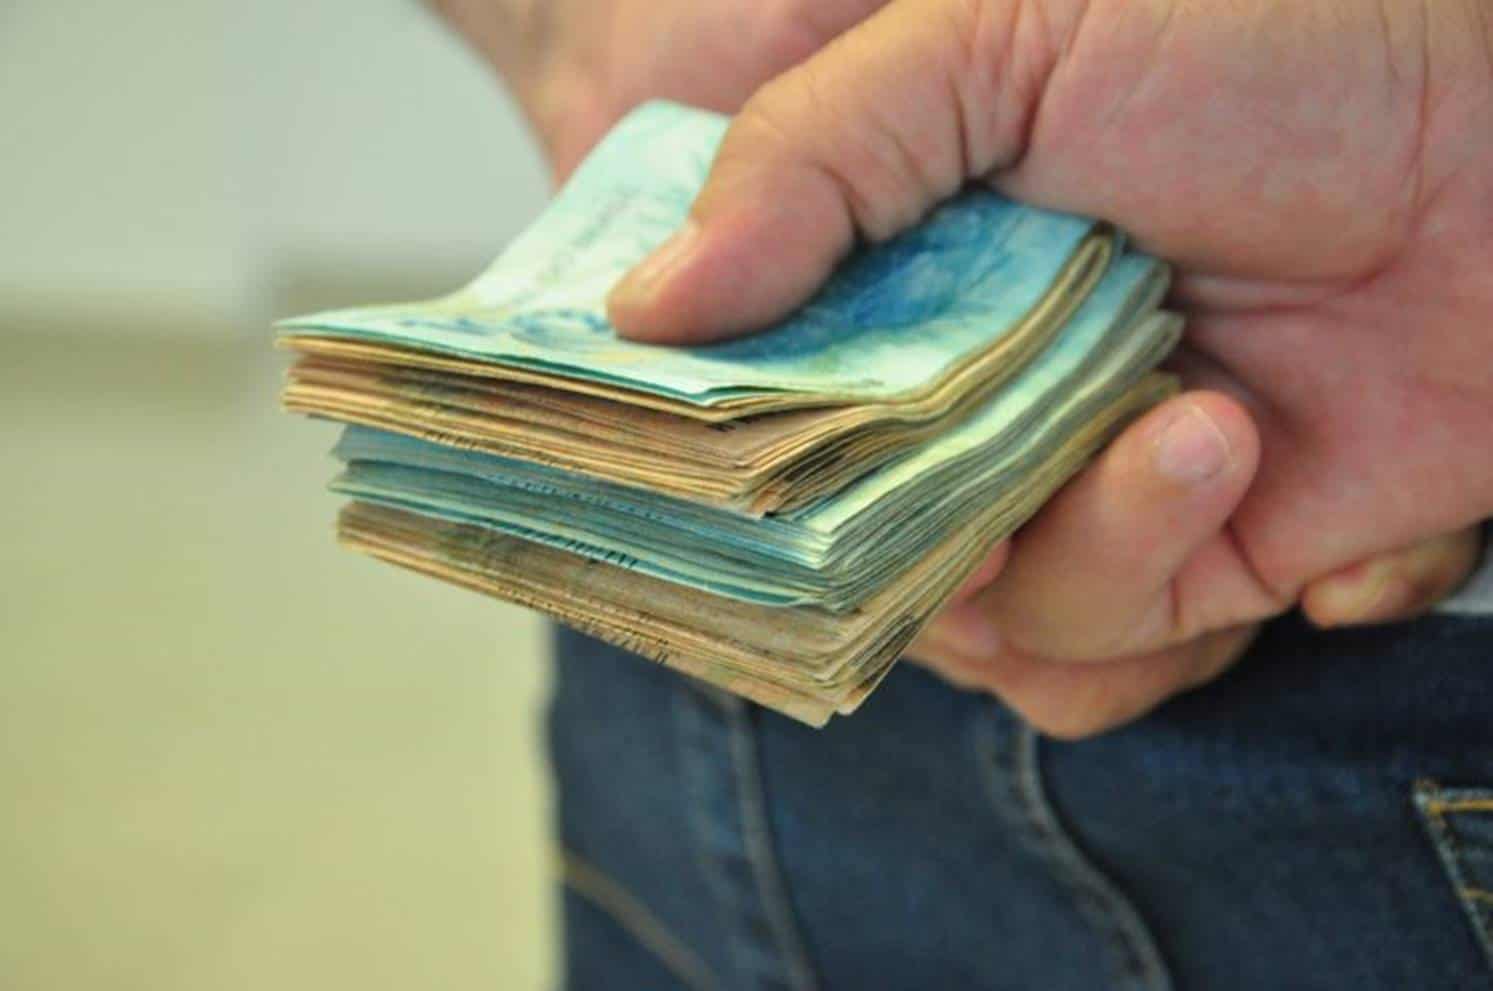 Pagamentos do BPC obtidos através de fraude gera prejuízo de R$ 7,6 milhões